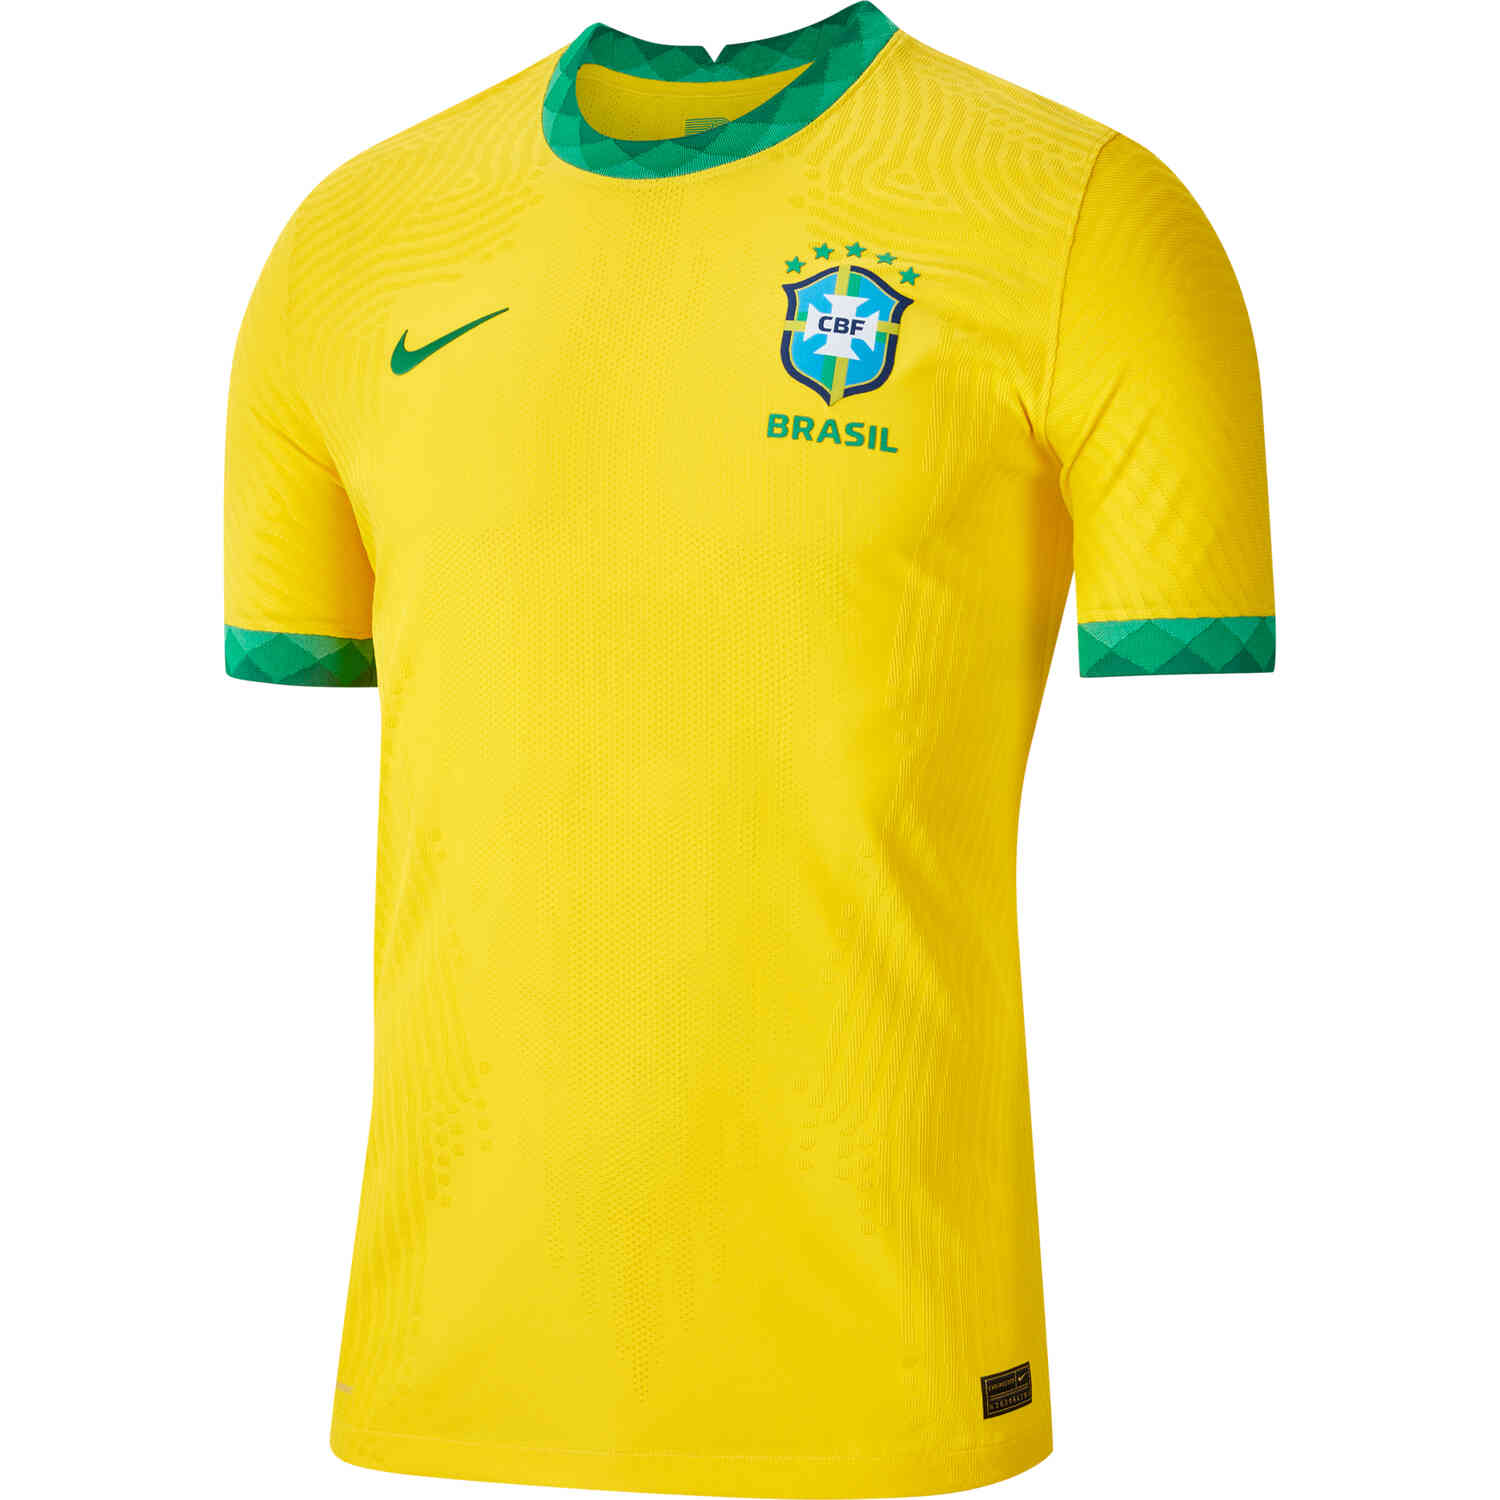 Buy Authentic Nike Brazil 2020 Olympic Vaporknit Soccer Jersey Cd0583-749  Sz M online